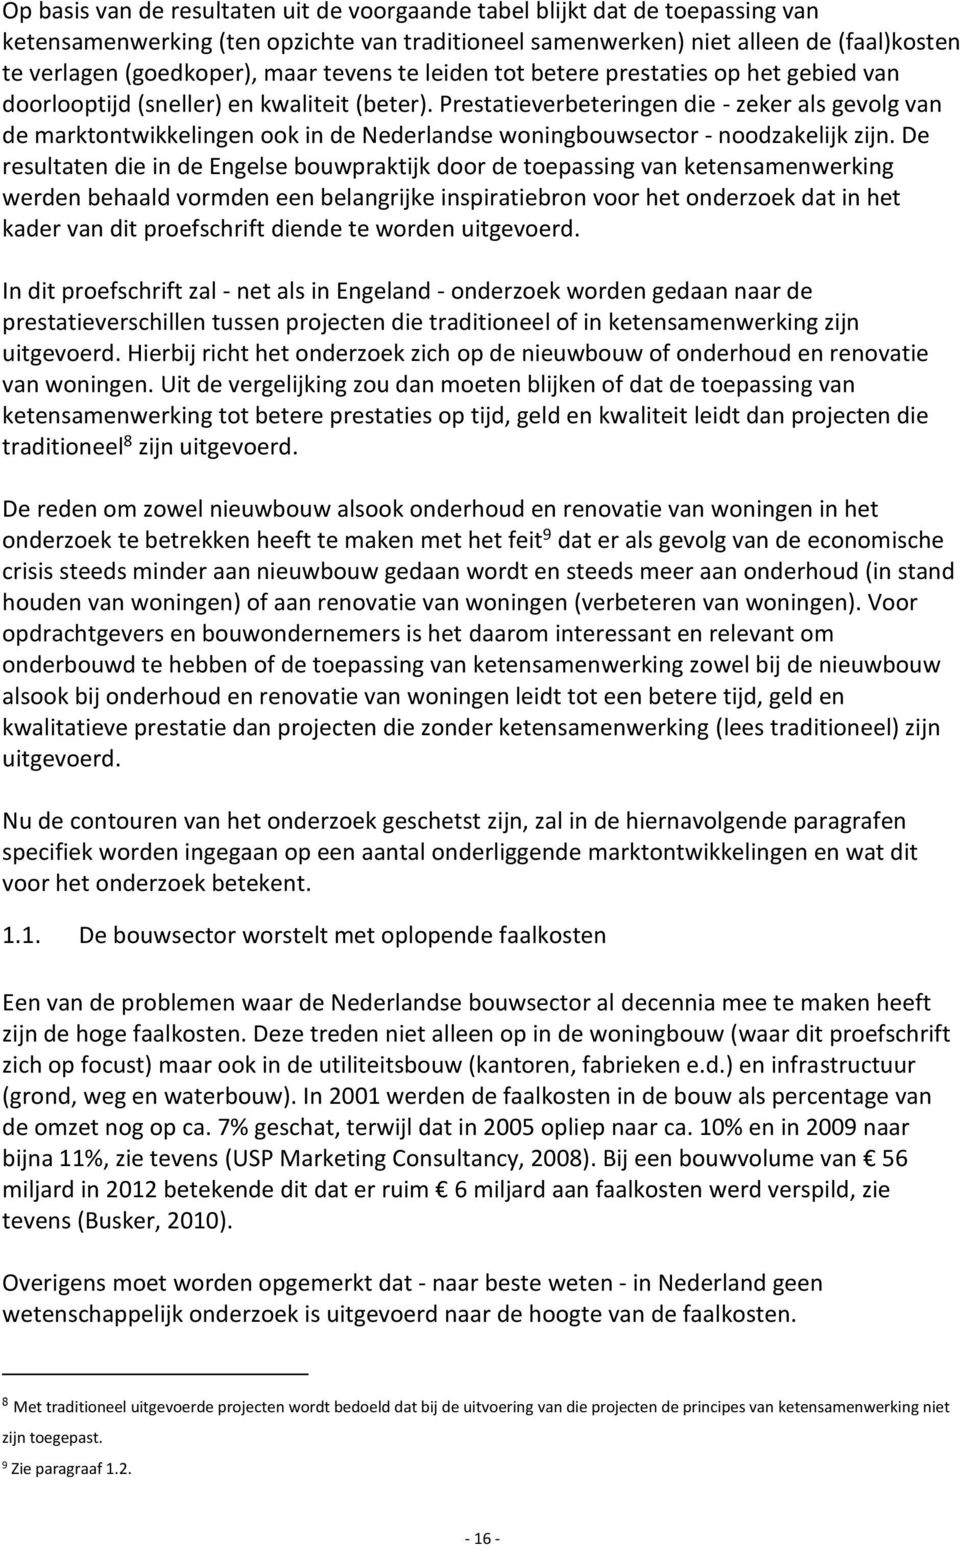 Prestatieverbeteringen die - zeker als gevolg van de marktontwikkelingen ook in de Nederlandse woningbouwsector - noodzakelijk zijn.